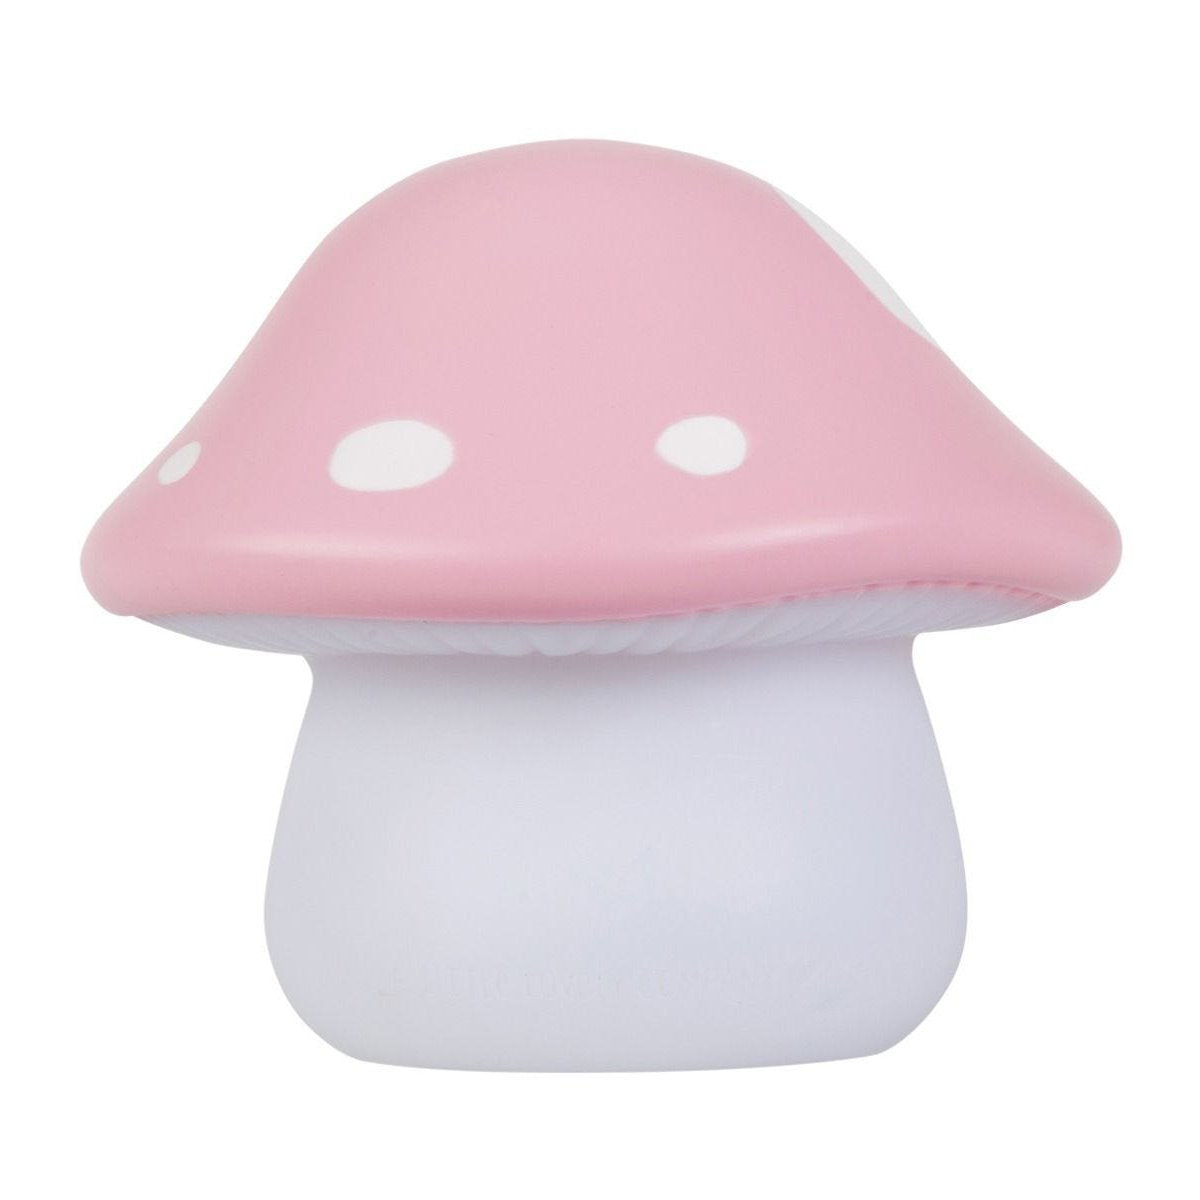 a-little-lovely-company-little-light-mushroom- (1)